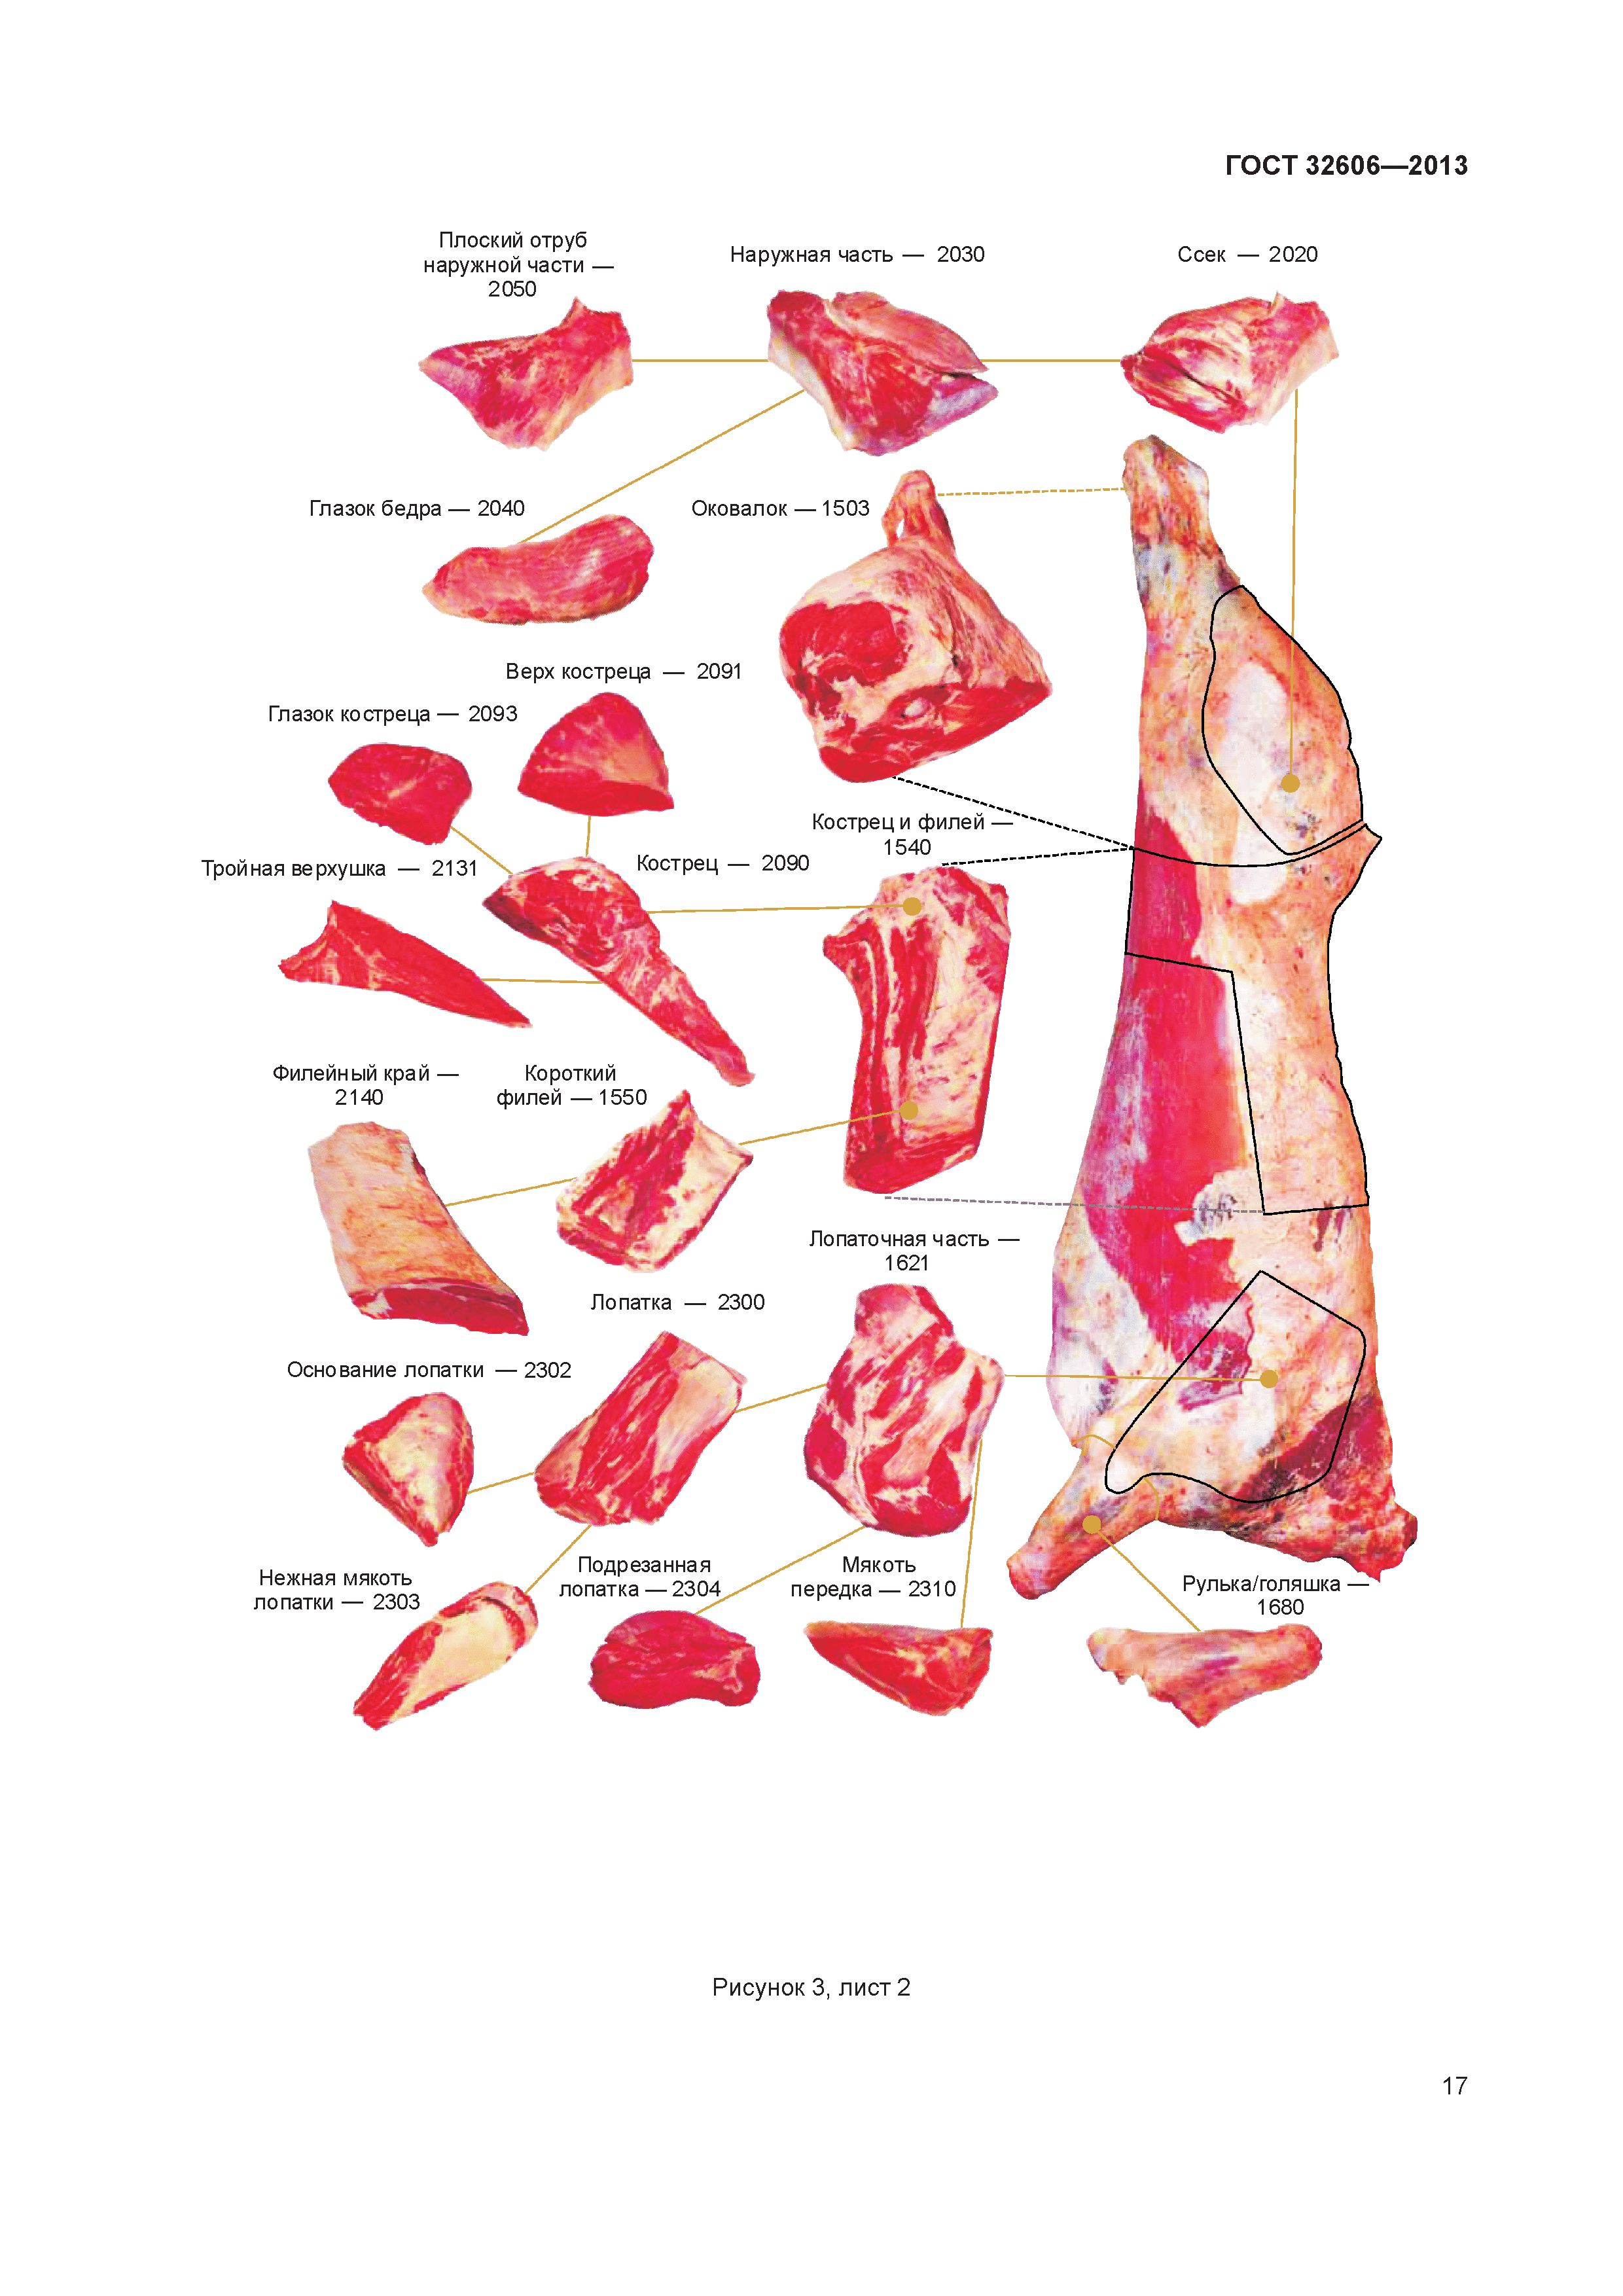 Вырезка части говядины